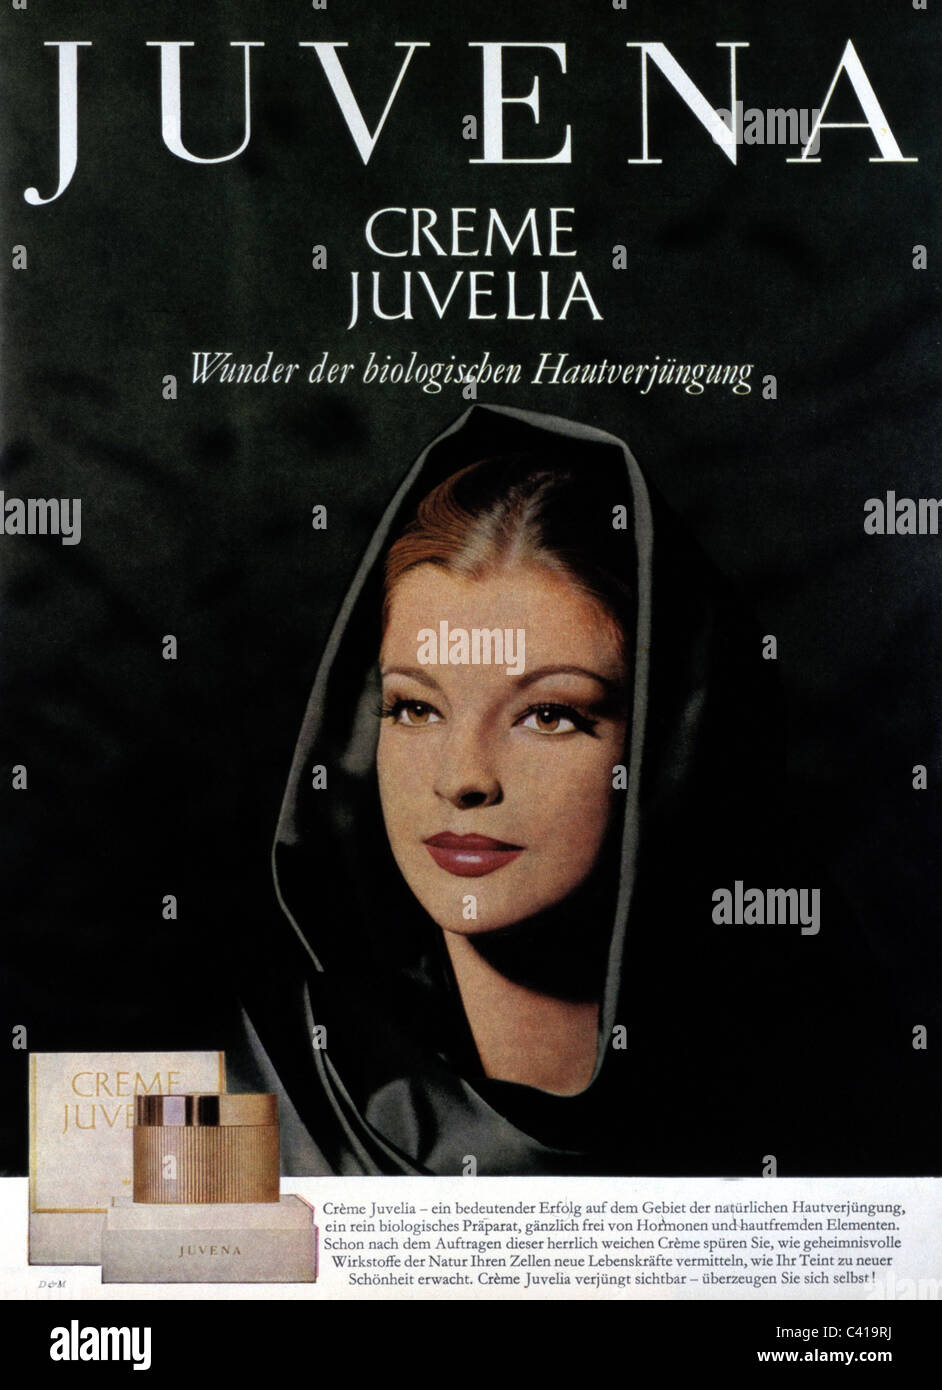 Publicité, cosmétiques, Juvena, crème, Juvelia, publicité, 1963, droits additionnels-Clearences-non disponible Banque D'Images